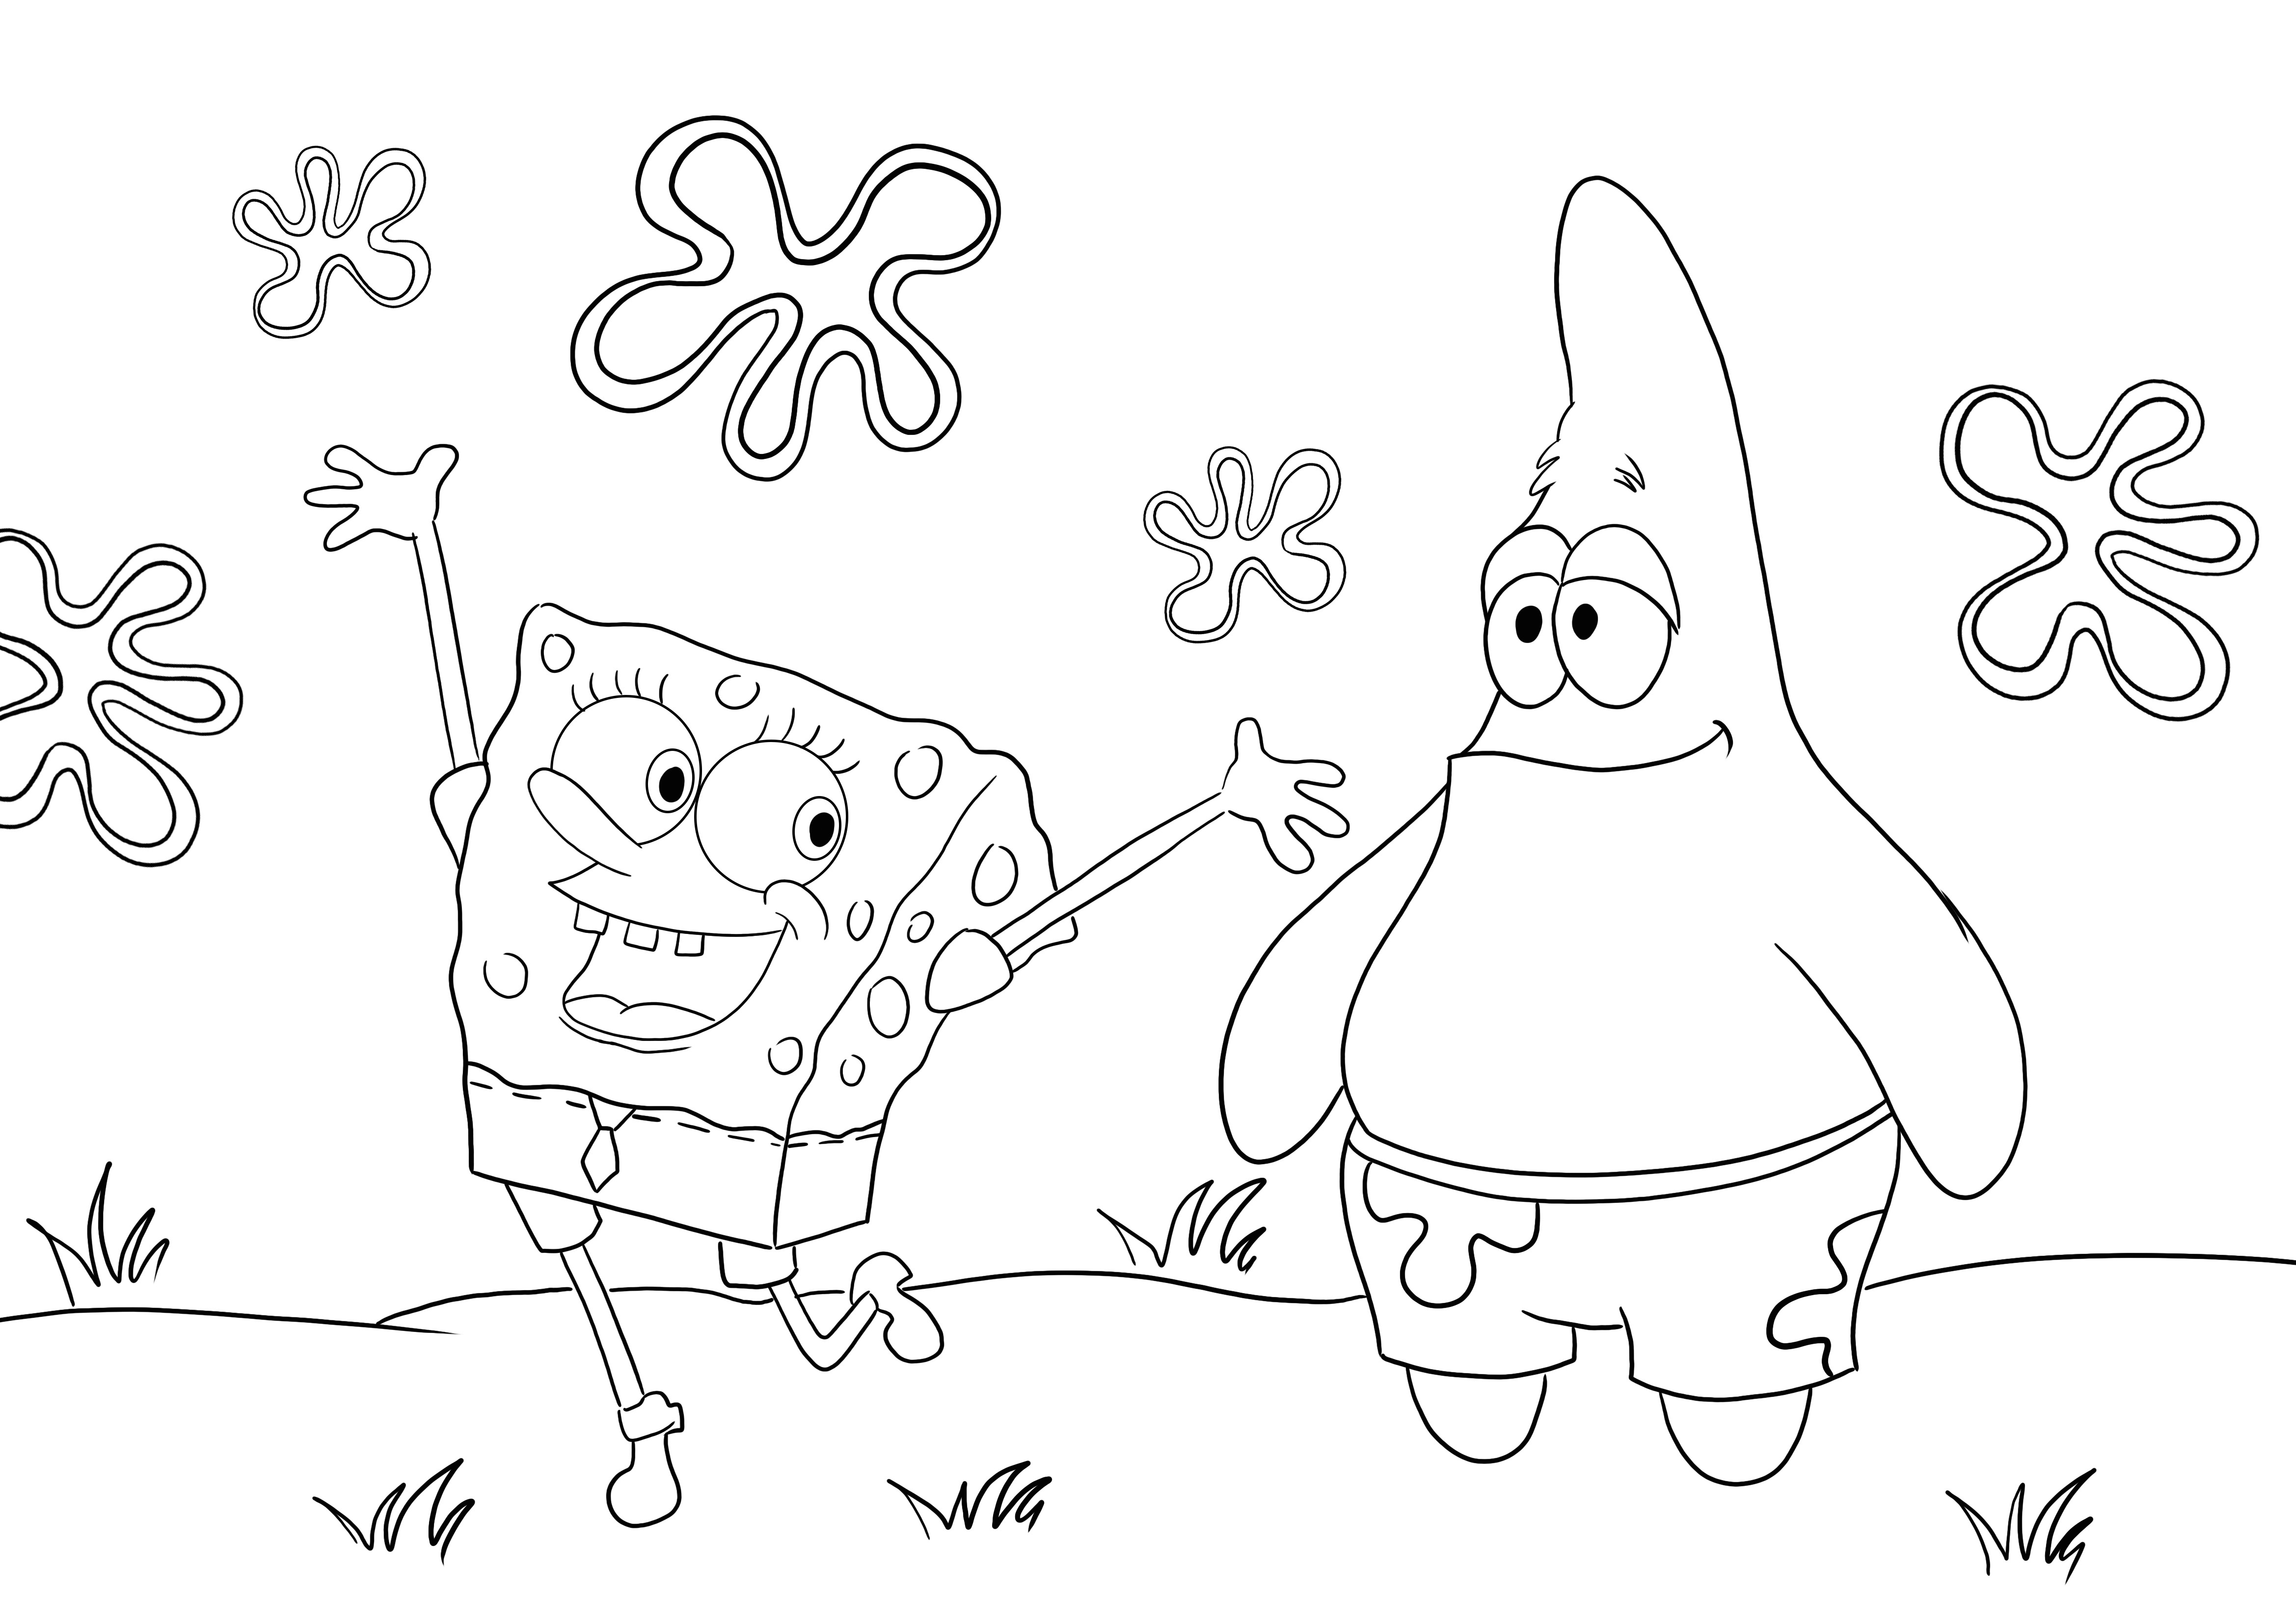 Happy Sponge SquarePants et son pote Patrick à colorier et imprimer gratuitement